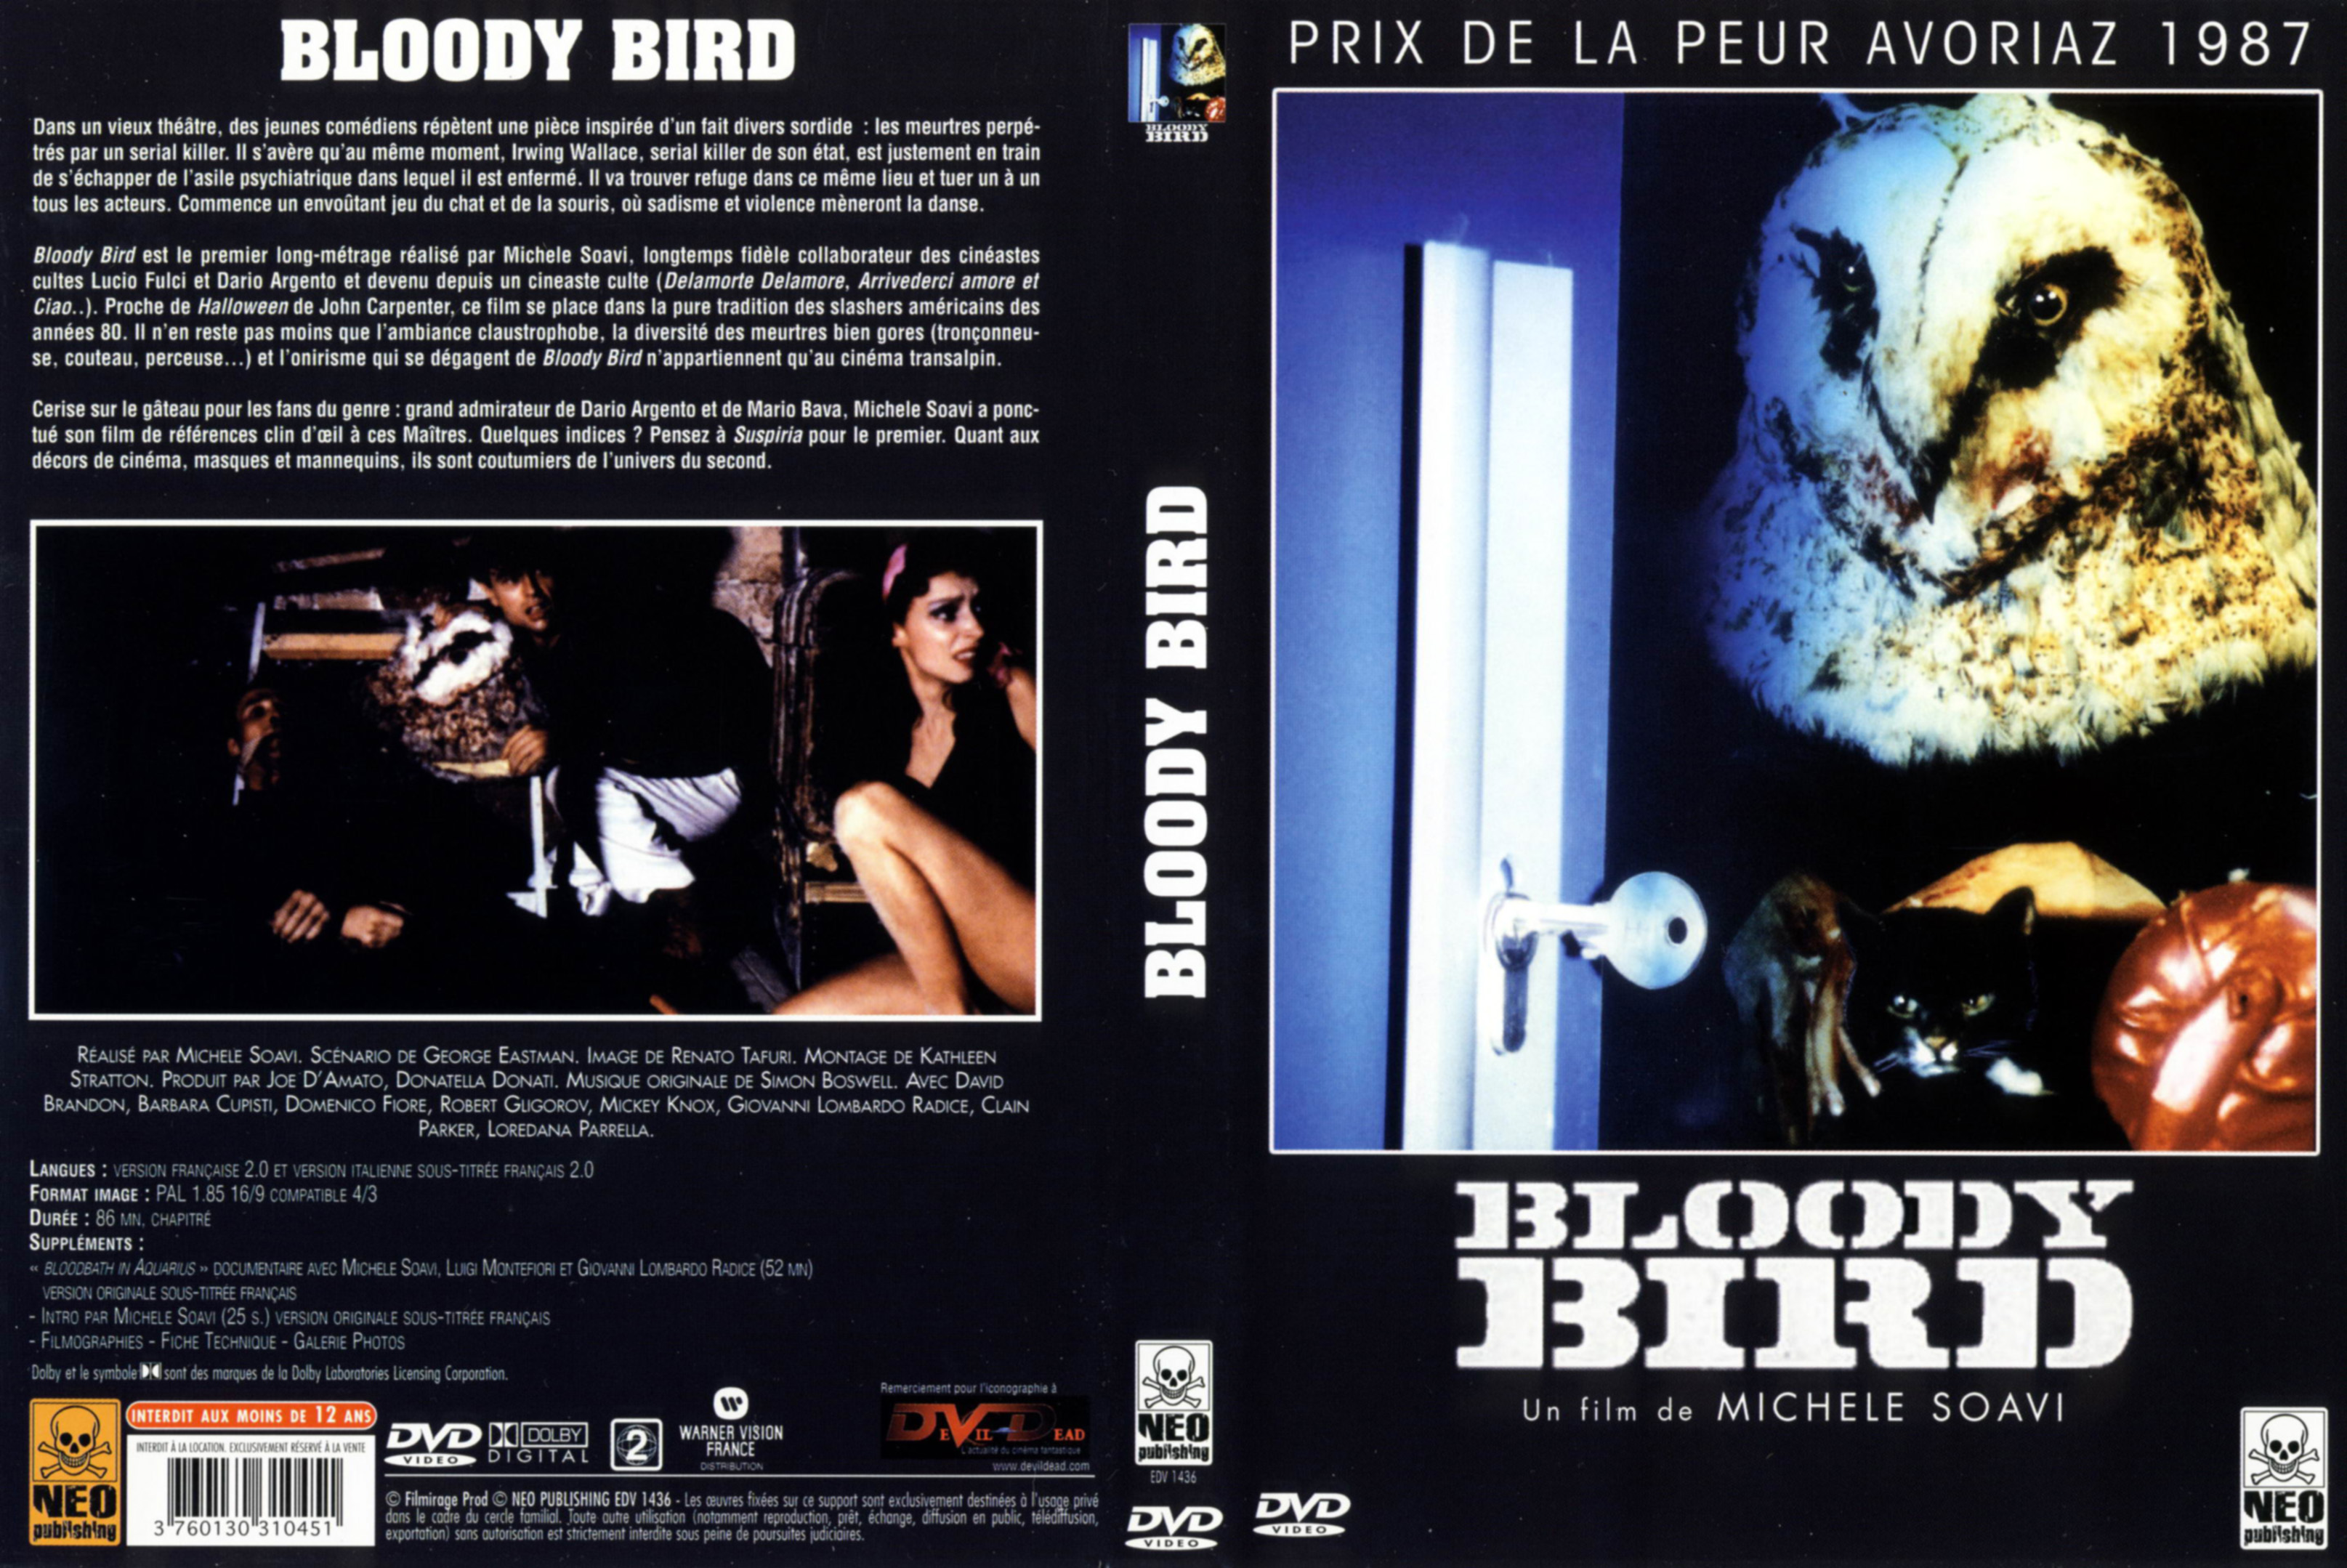 Jaquette DVD Bloody bird